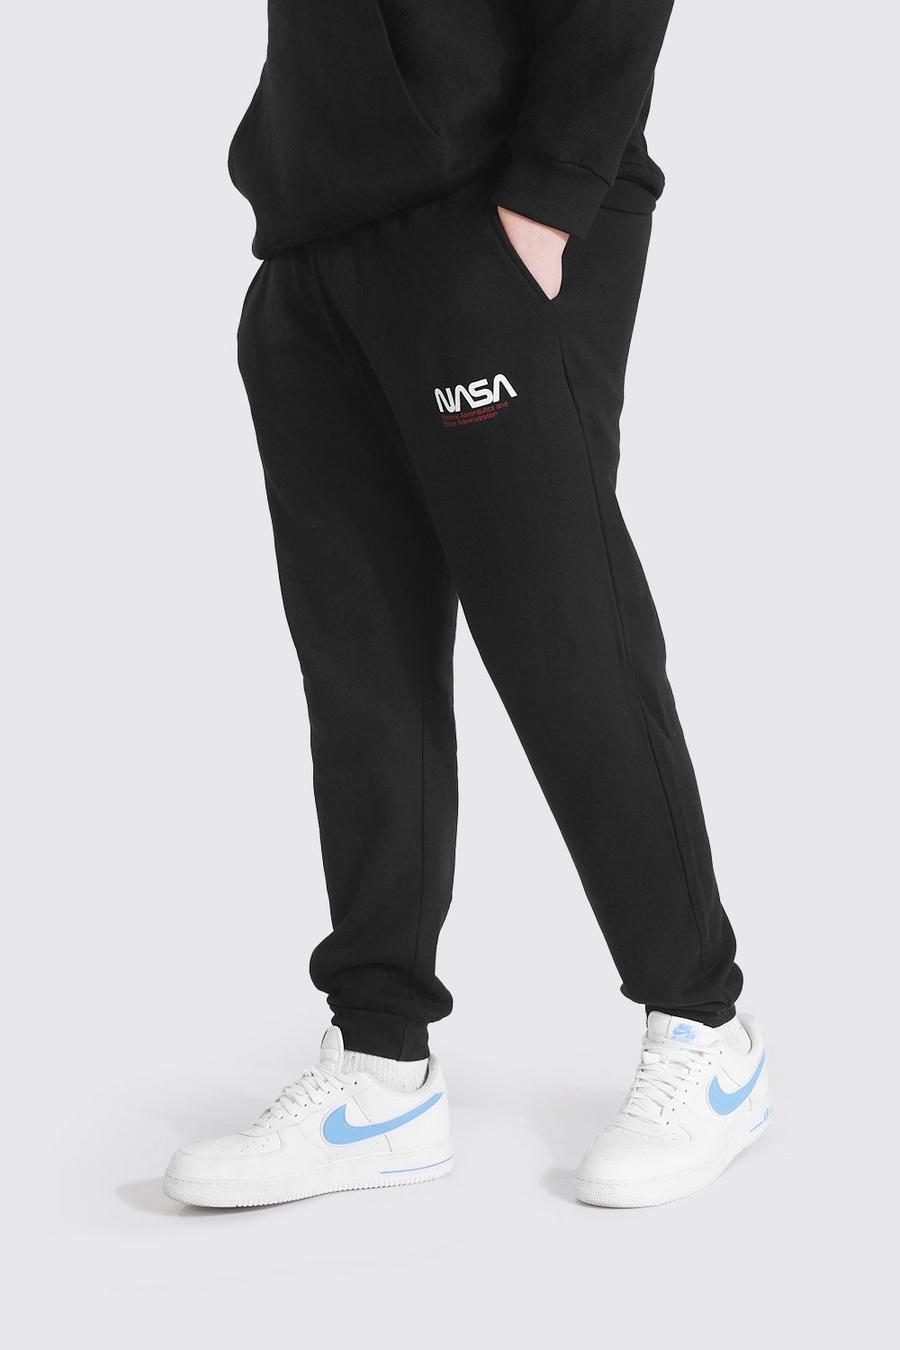 Pantalones de deporte con texto y logotipo licenciado de la NASA talla Plus, Negro image number 1